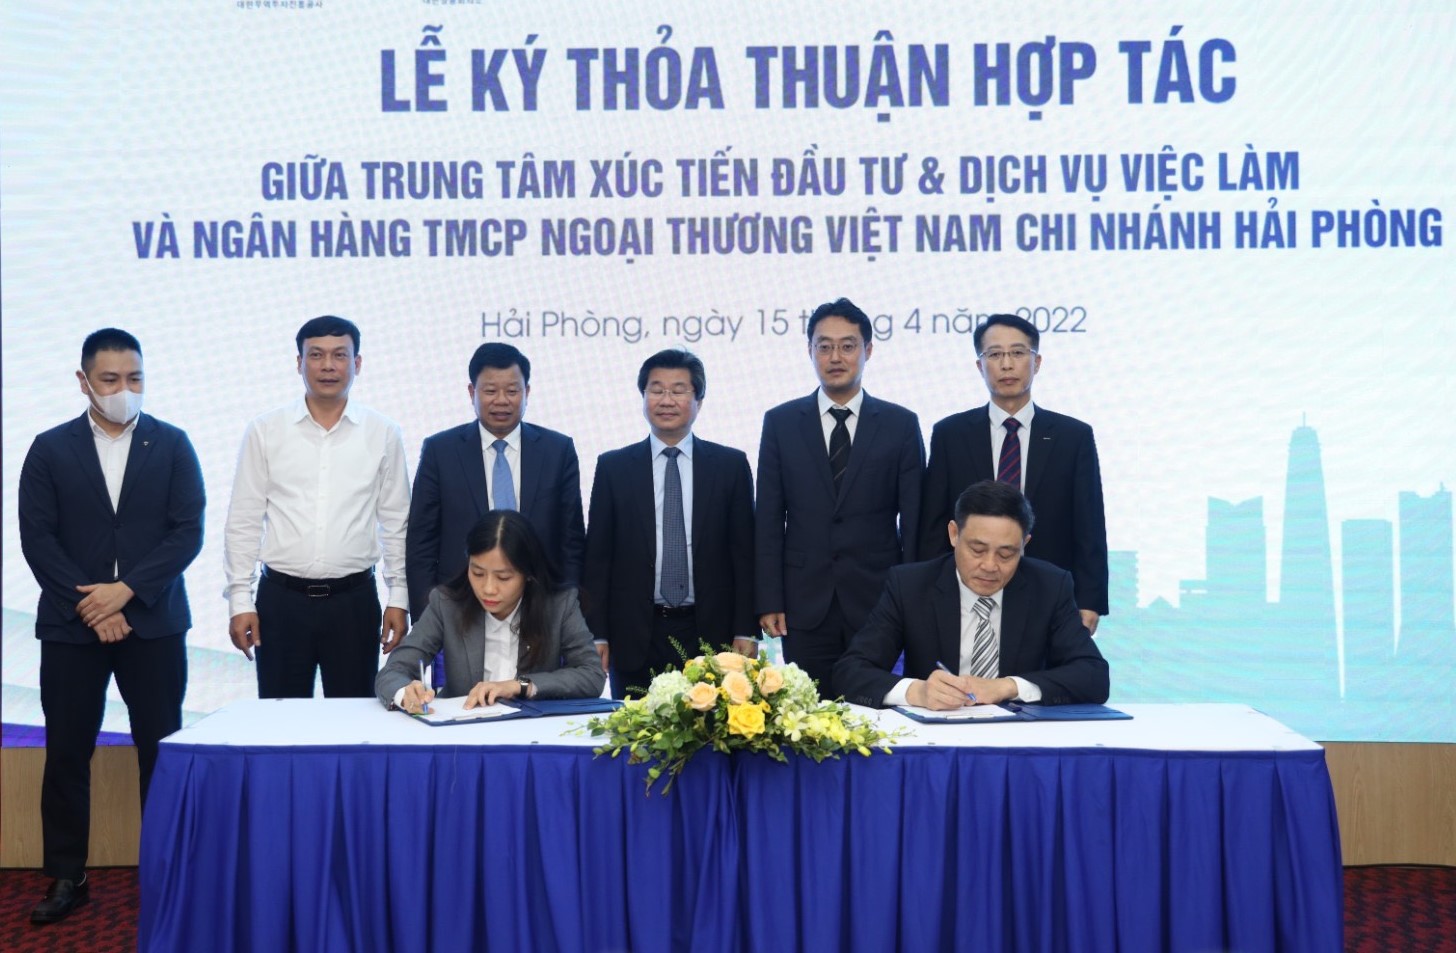 Trung tâm Xúc tiến đầu tư và dịch vụ việc làm (Khu kinh tế Hải Phòng) ký hết hợp tác với Ngân hàng TMCP Ngoại thương Việt Nam chi nhánh Hải Phòng